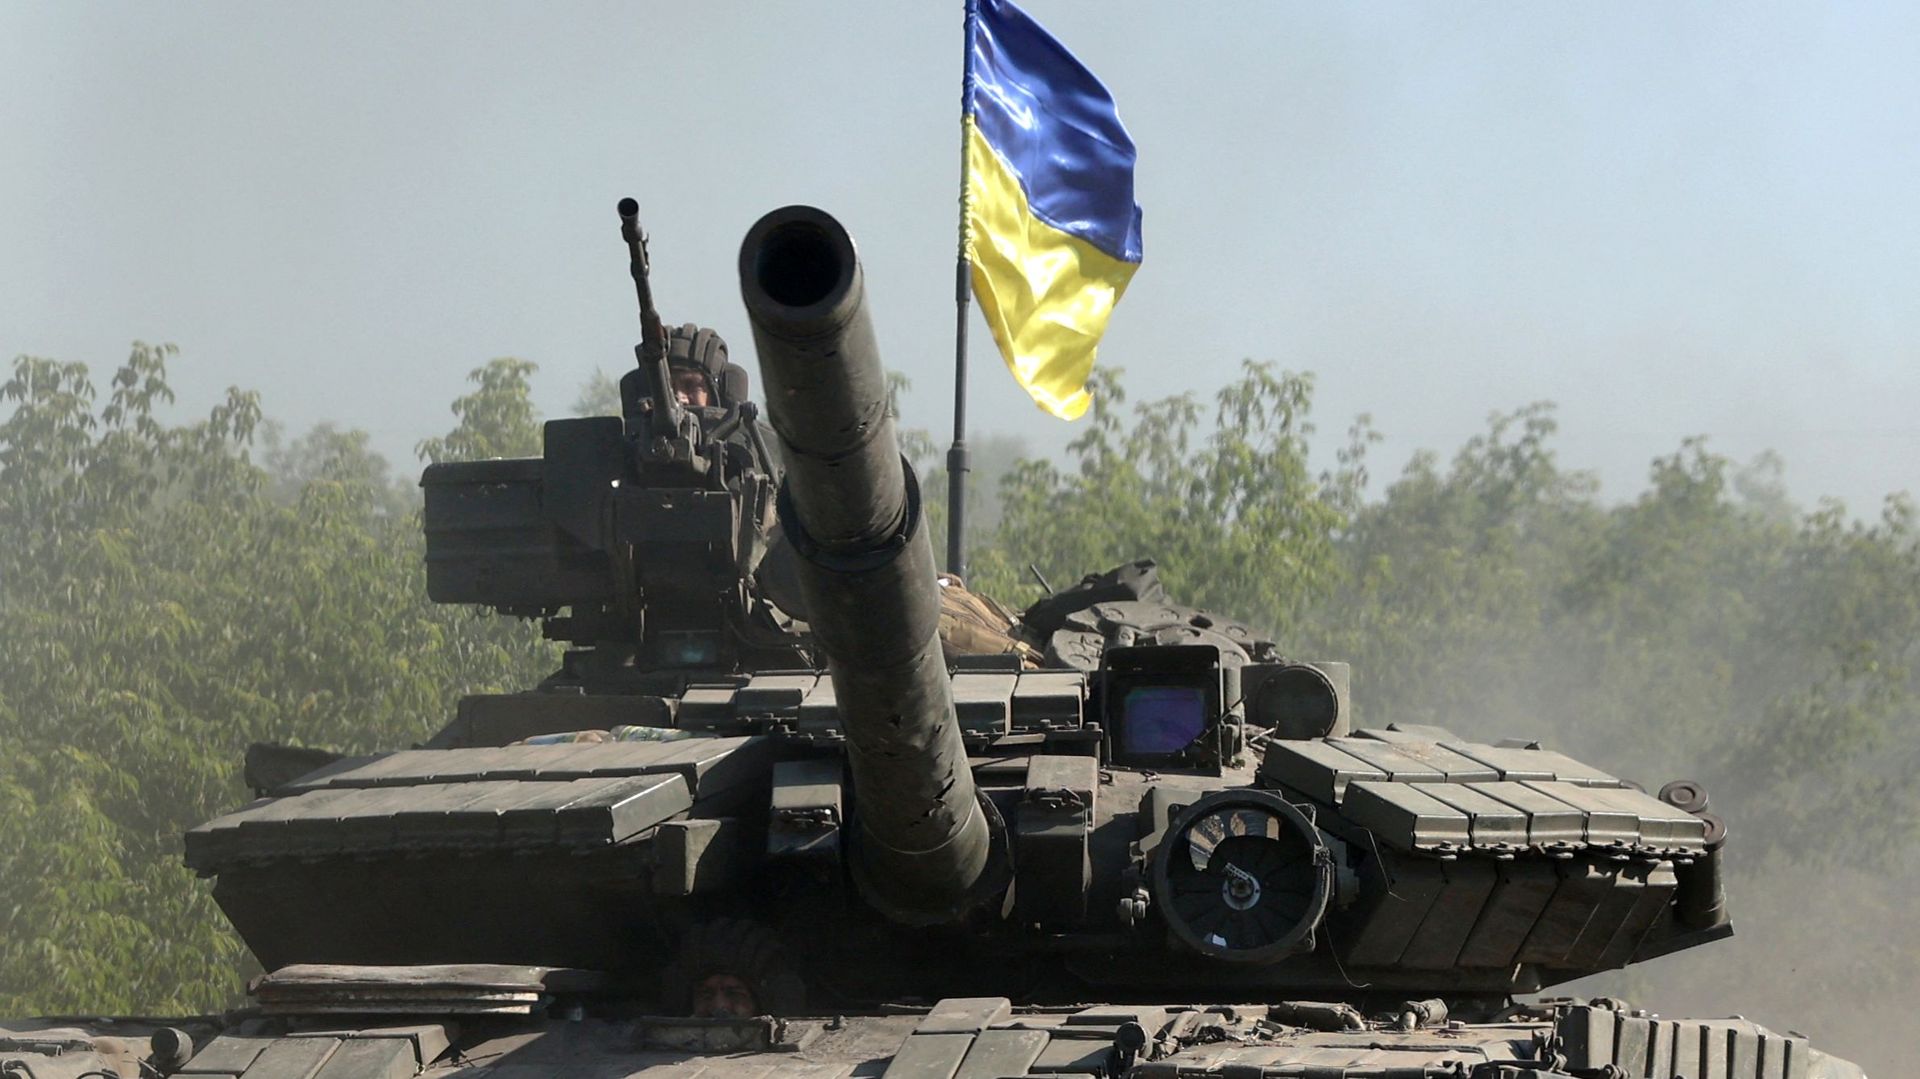 Des soldats ukrainiens conduisent un char sur une route de la région de Donbass, dans l’est de l’Ukraine, le 21 juin 2022,